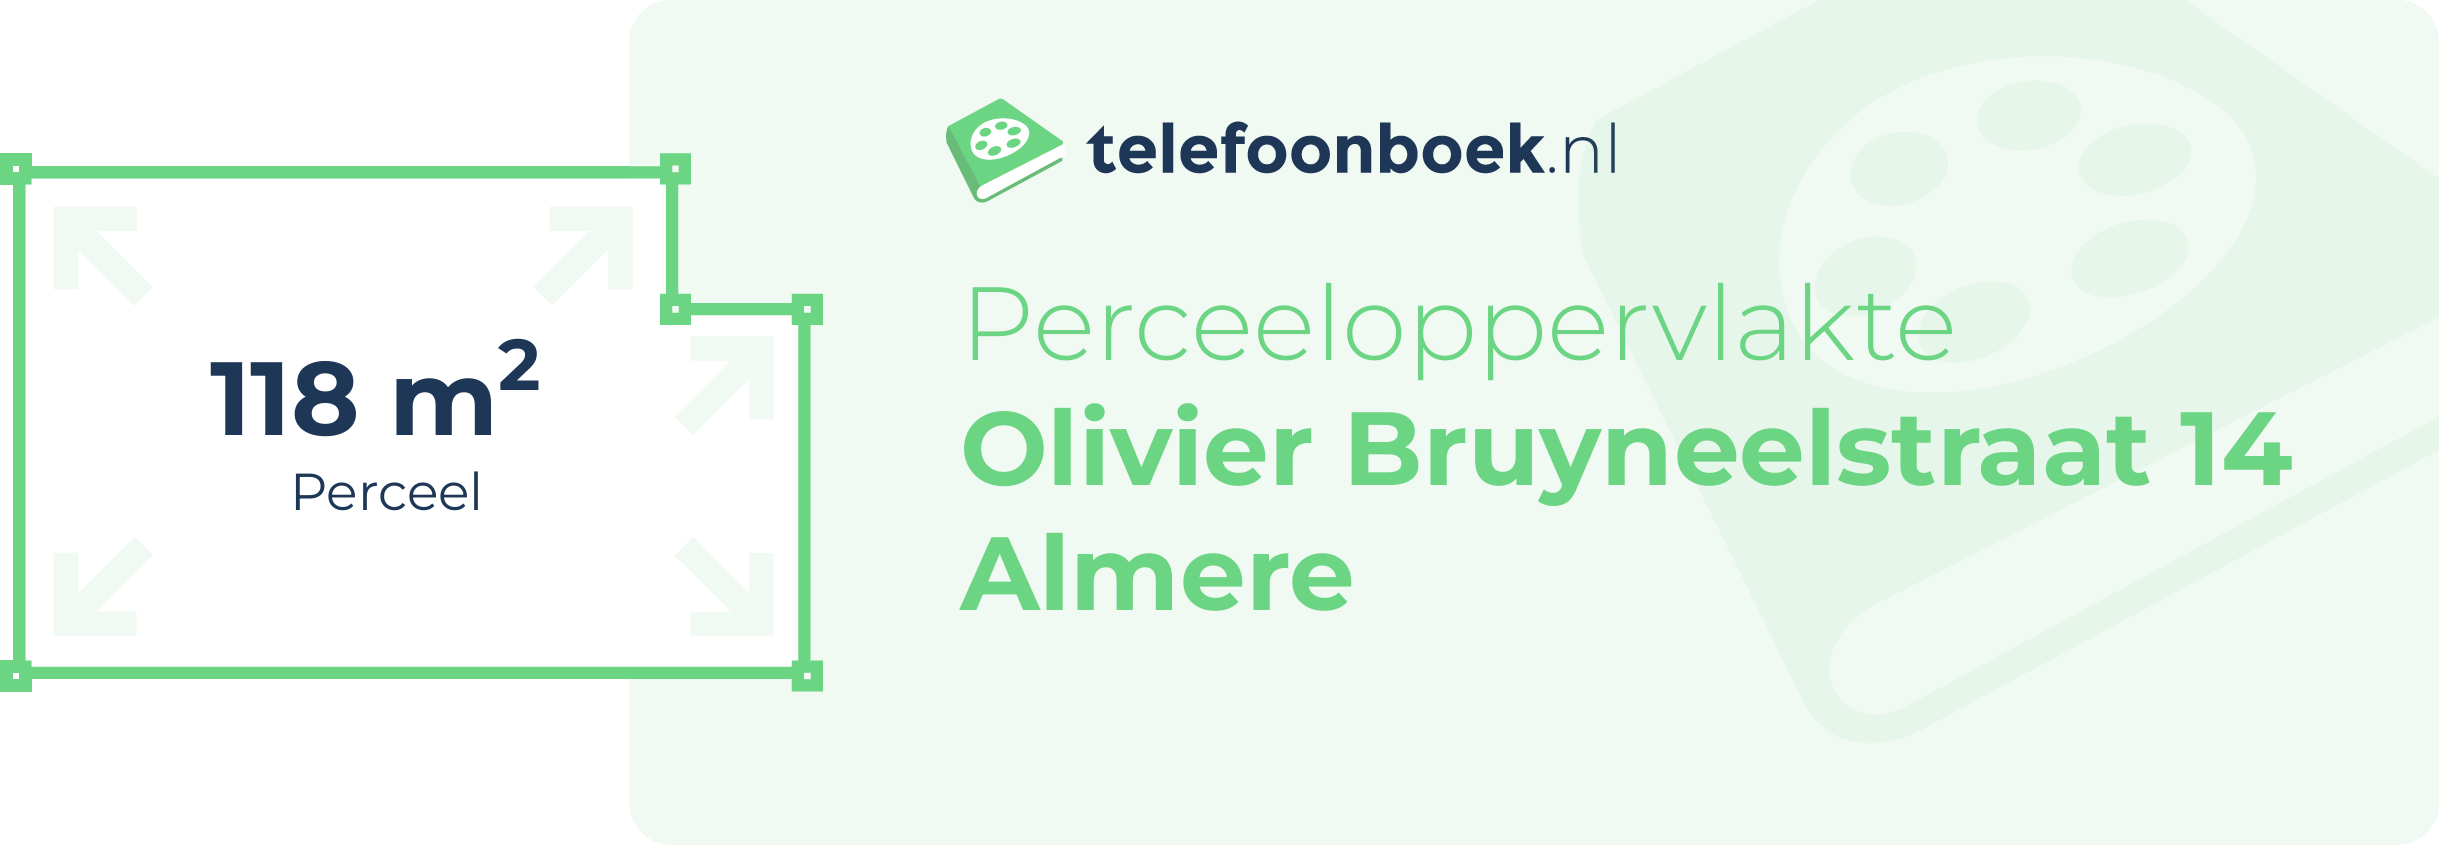 Perceeloppervlakte Olivier Bruyneelstraat 14 Almere